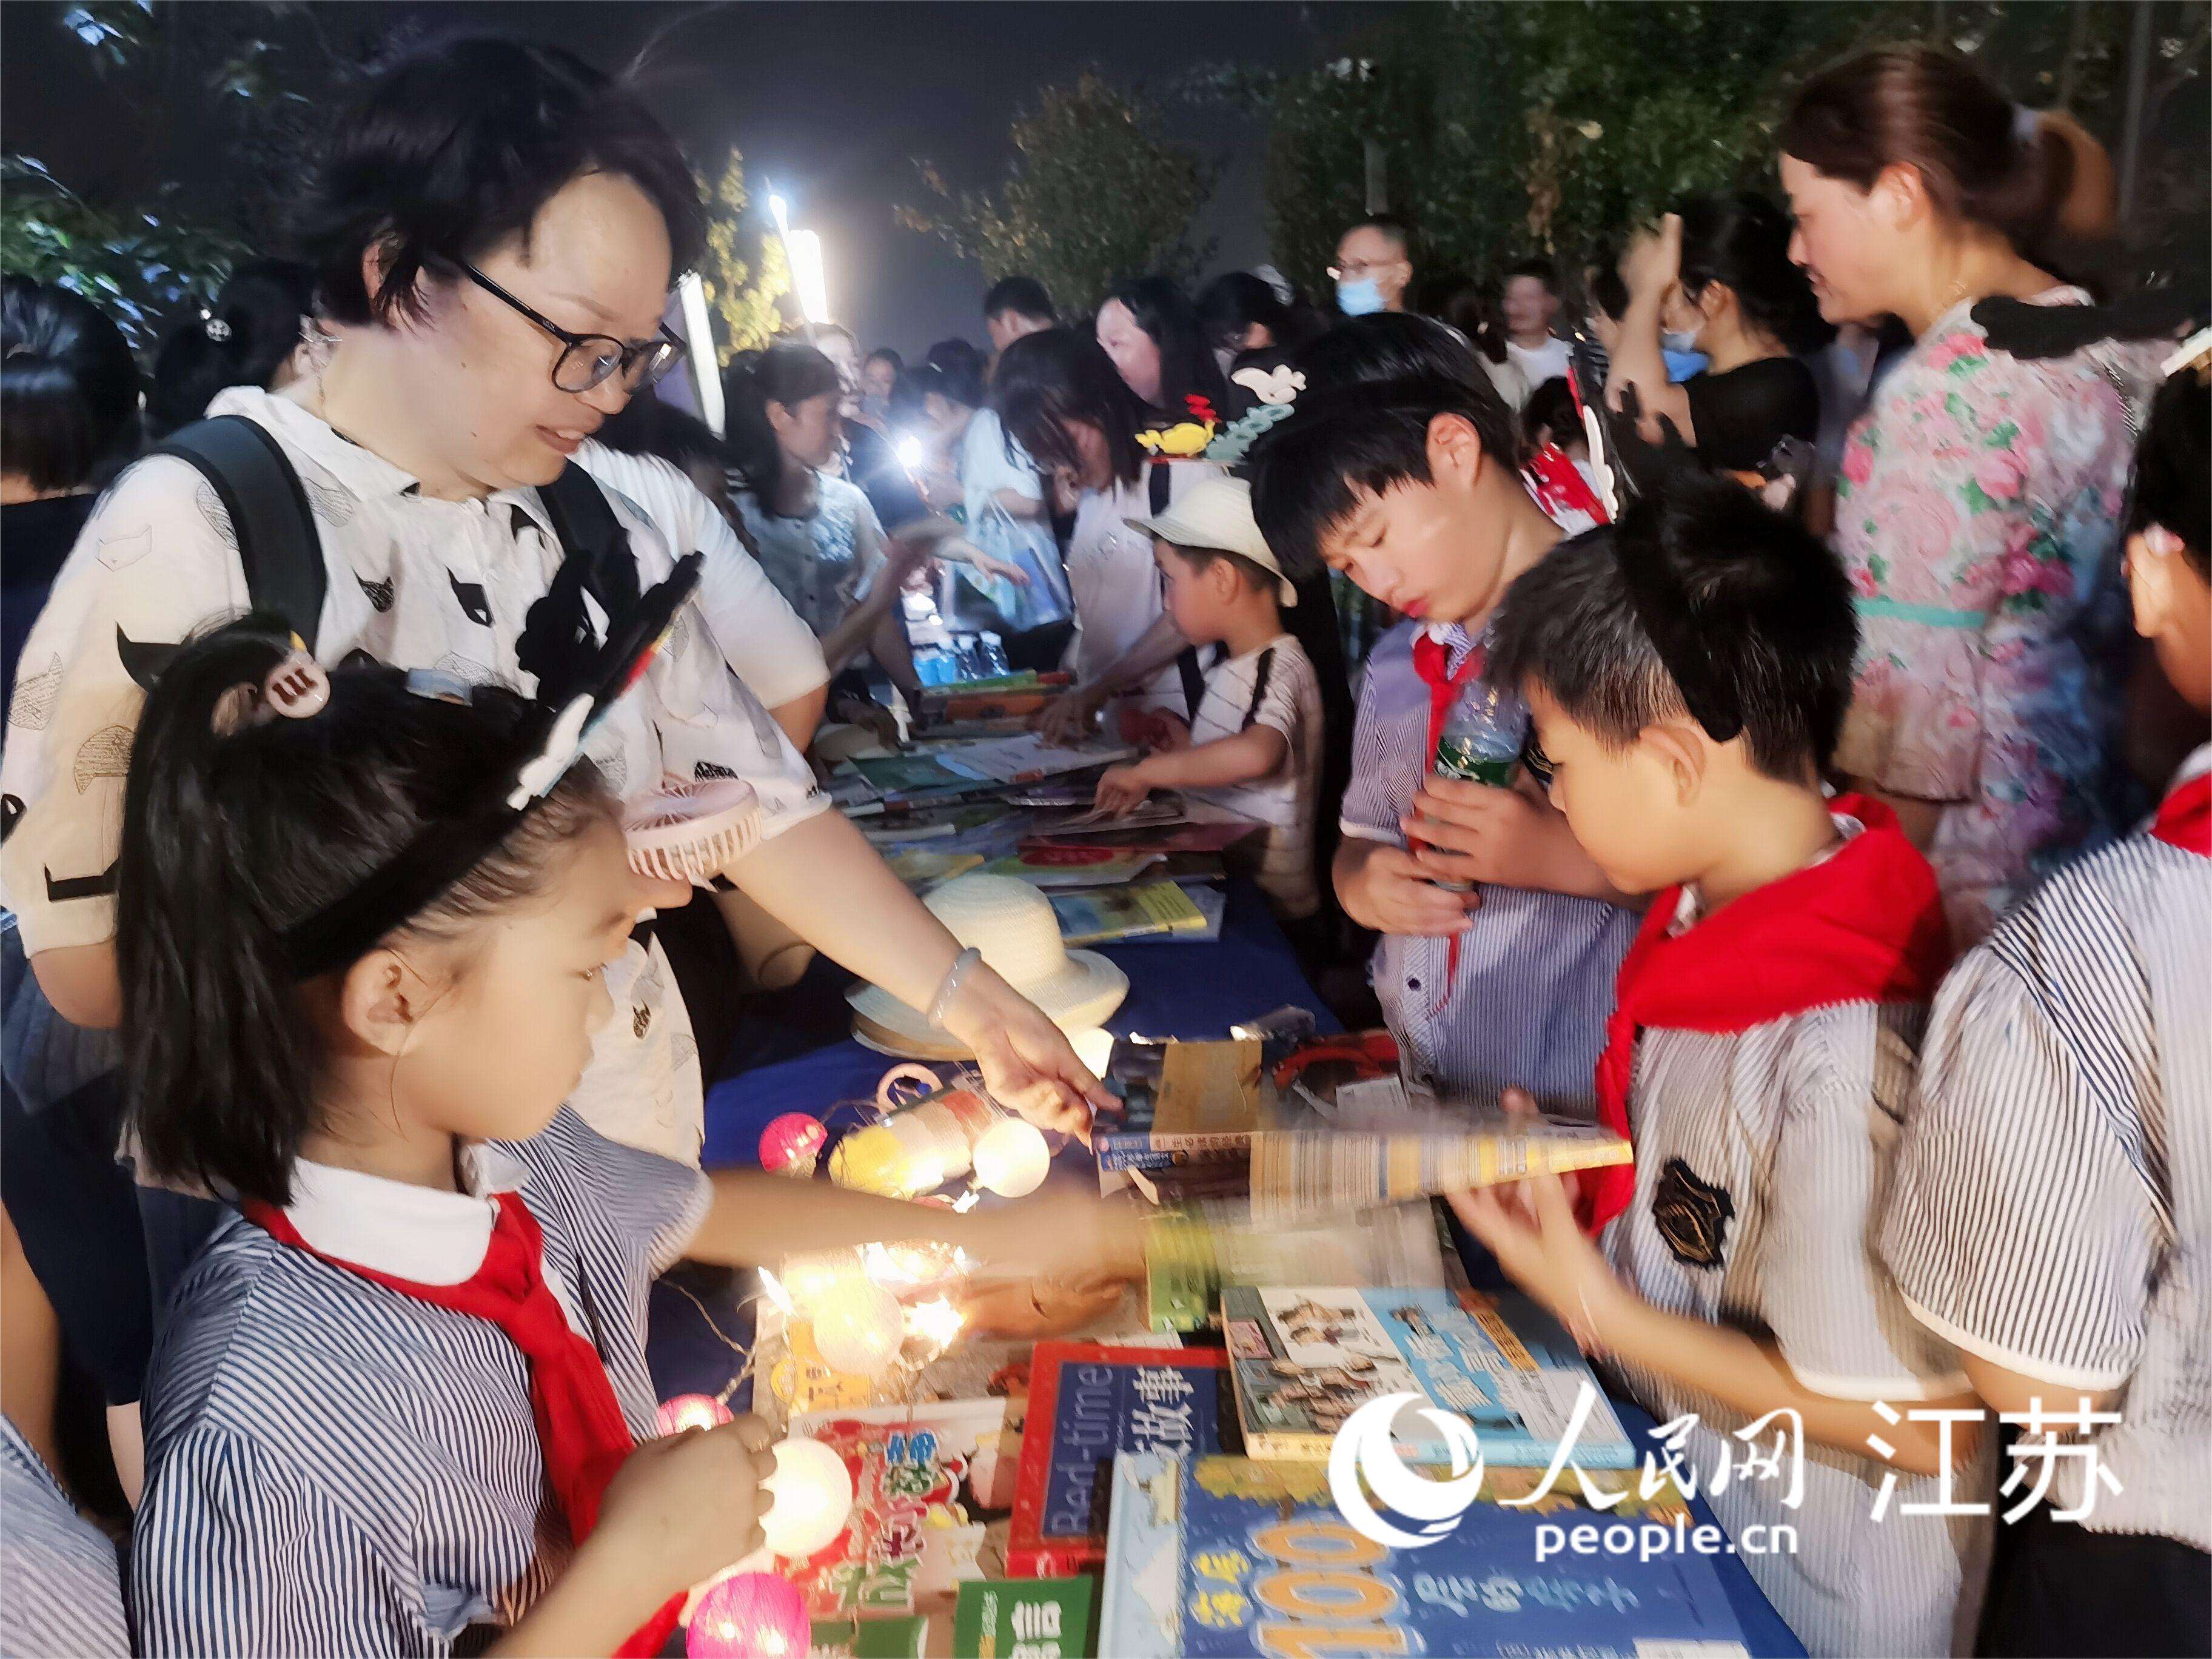 小学生参加“跳蚤书市”活动。人民网记者王继亮摄